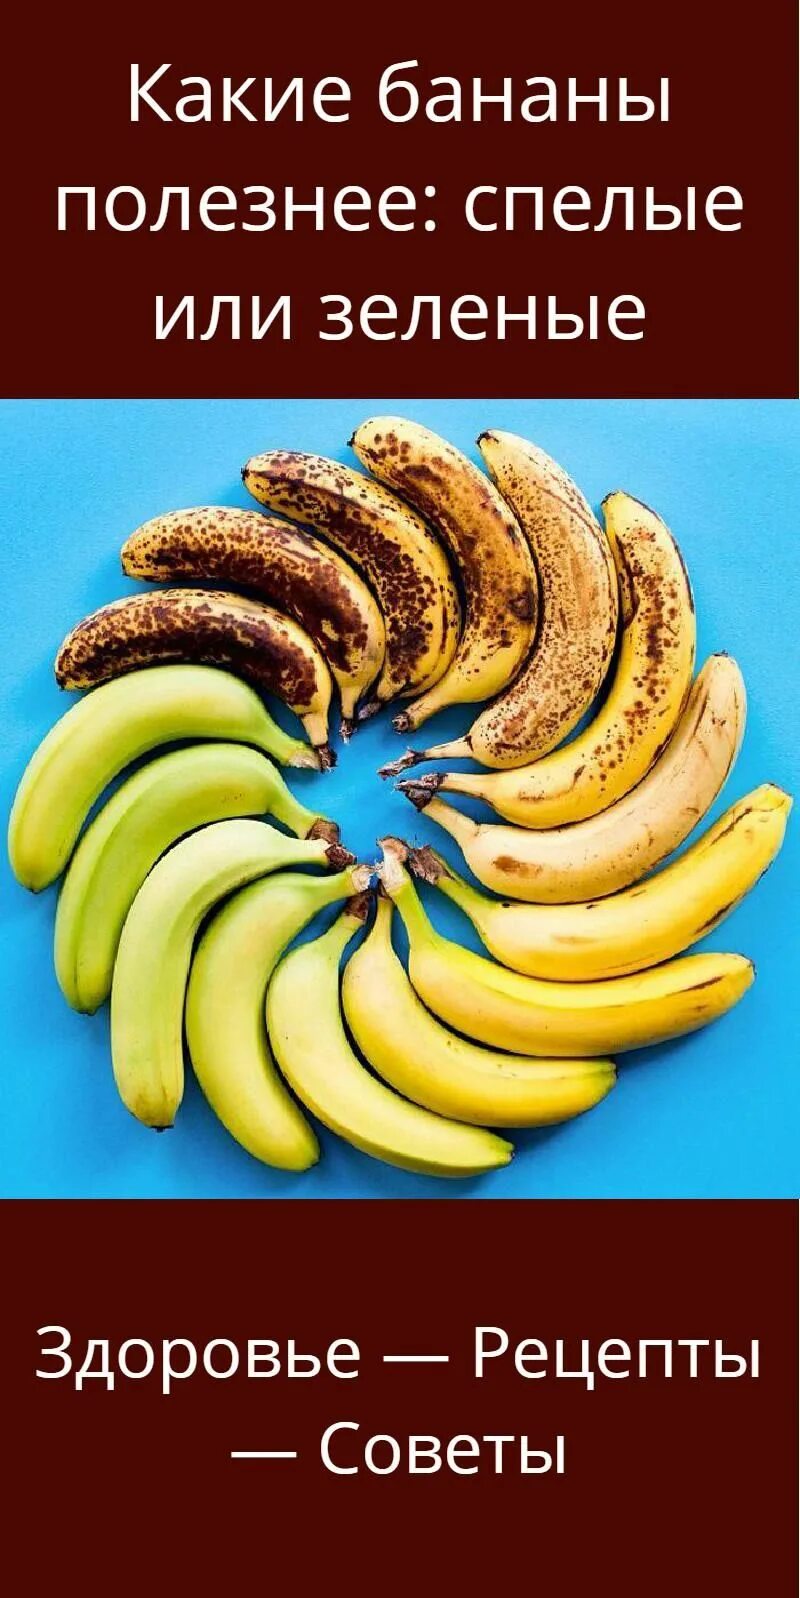 Какие бананы полезнее зеленые или. Банан. Калорийность зеленых бананов. Созревание бананов. Какие бананы полезнее есть.